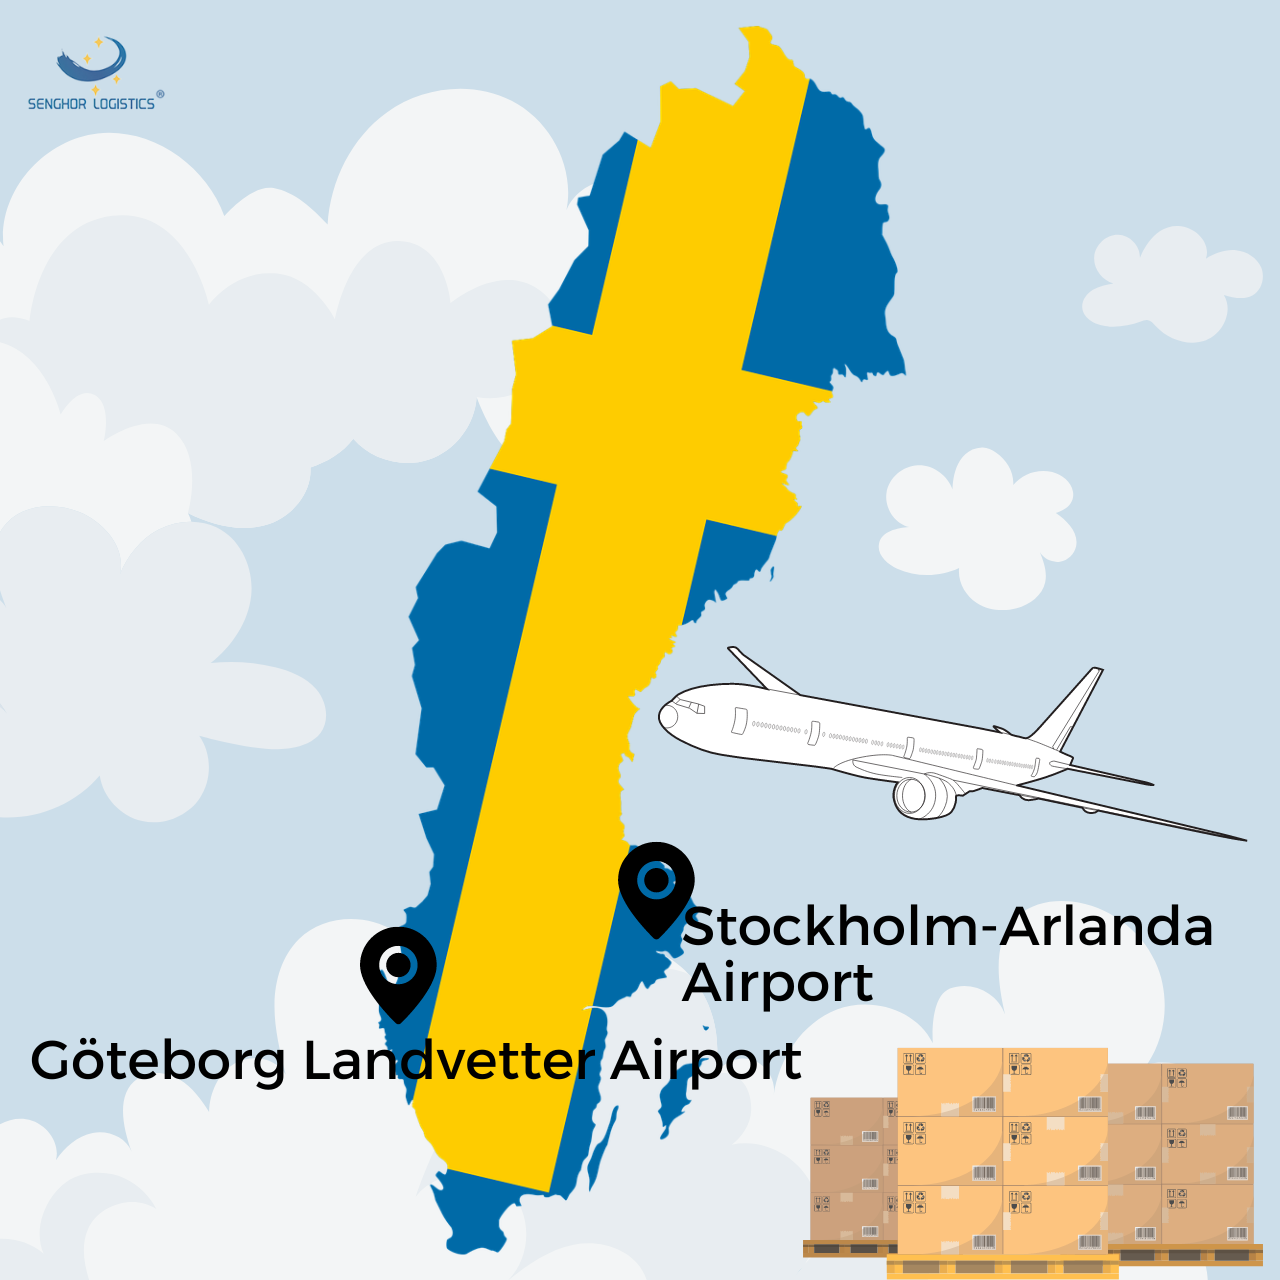 transporte de frete aéreo da China para a Suécia pela Senghor Logistics